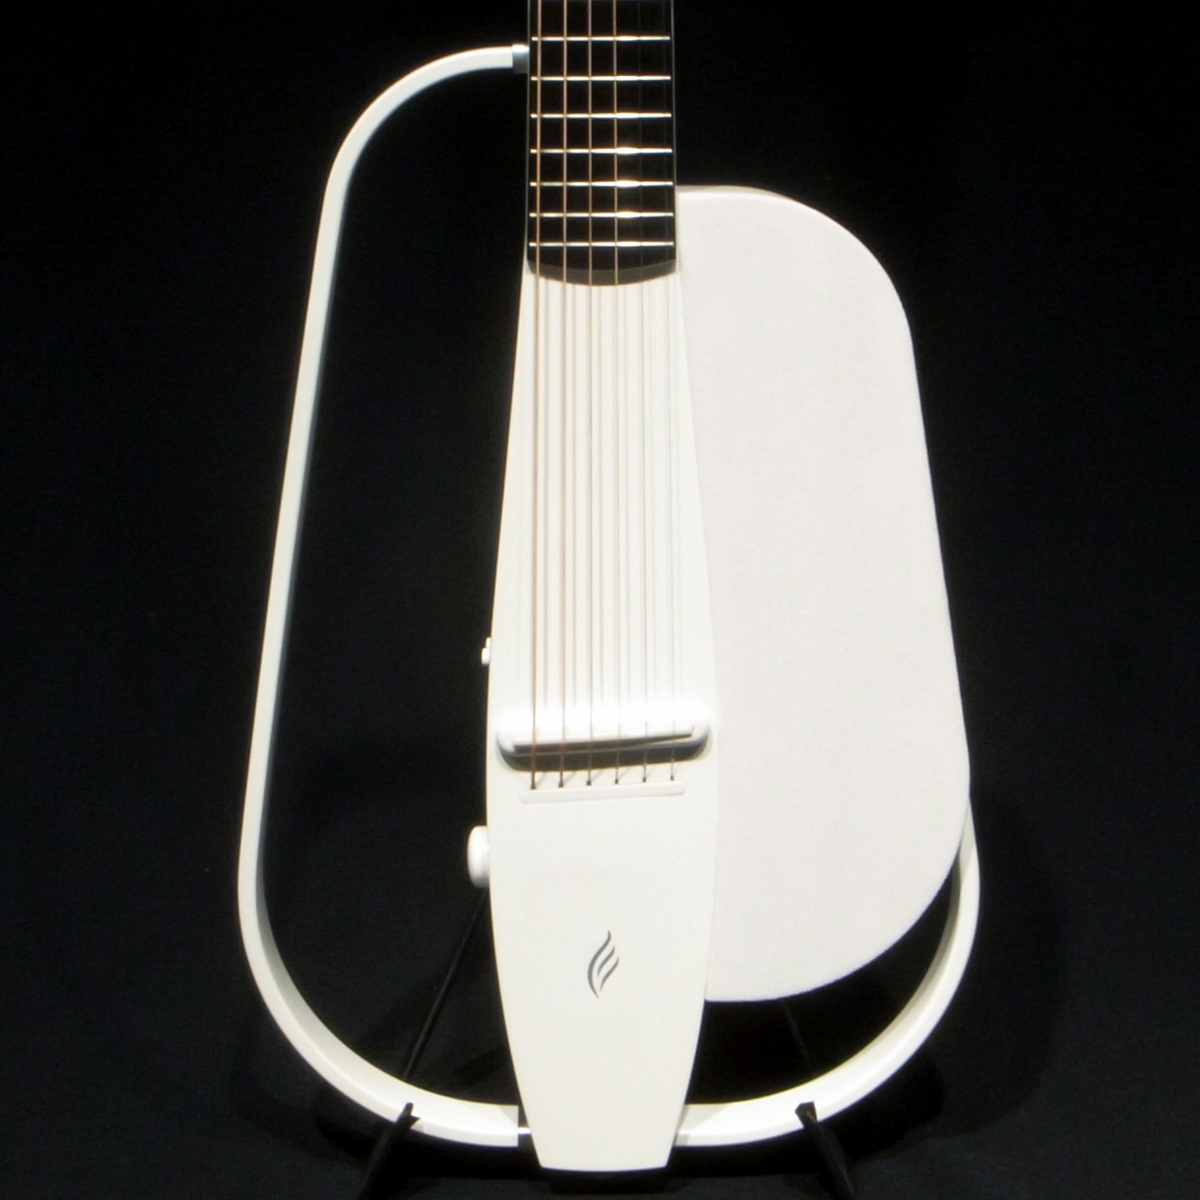 # витрина выставленный товар ENYA Guitars NEXG WHT 50W динамик встроенный электроакустическая гитара 